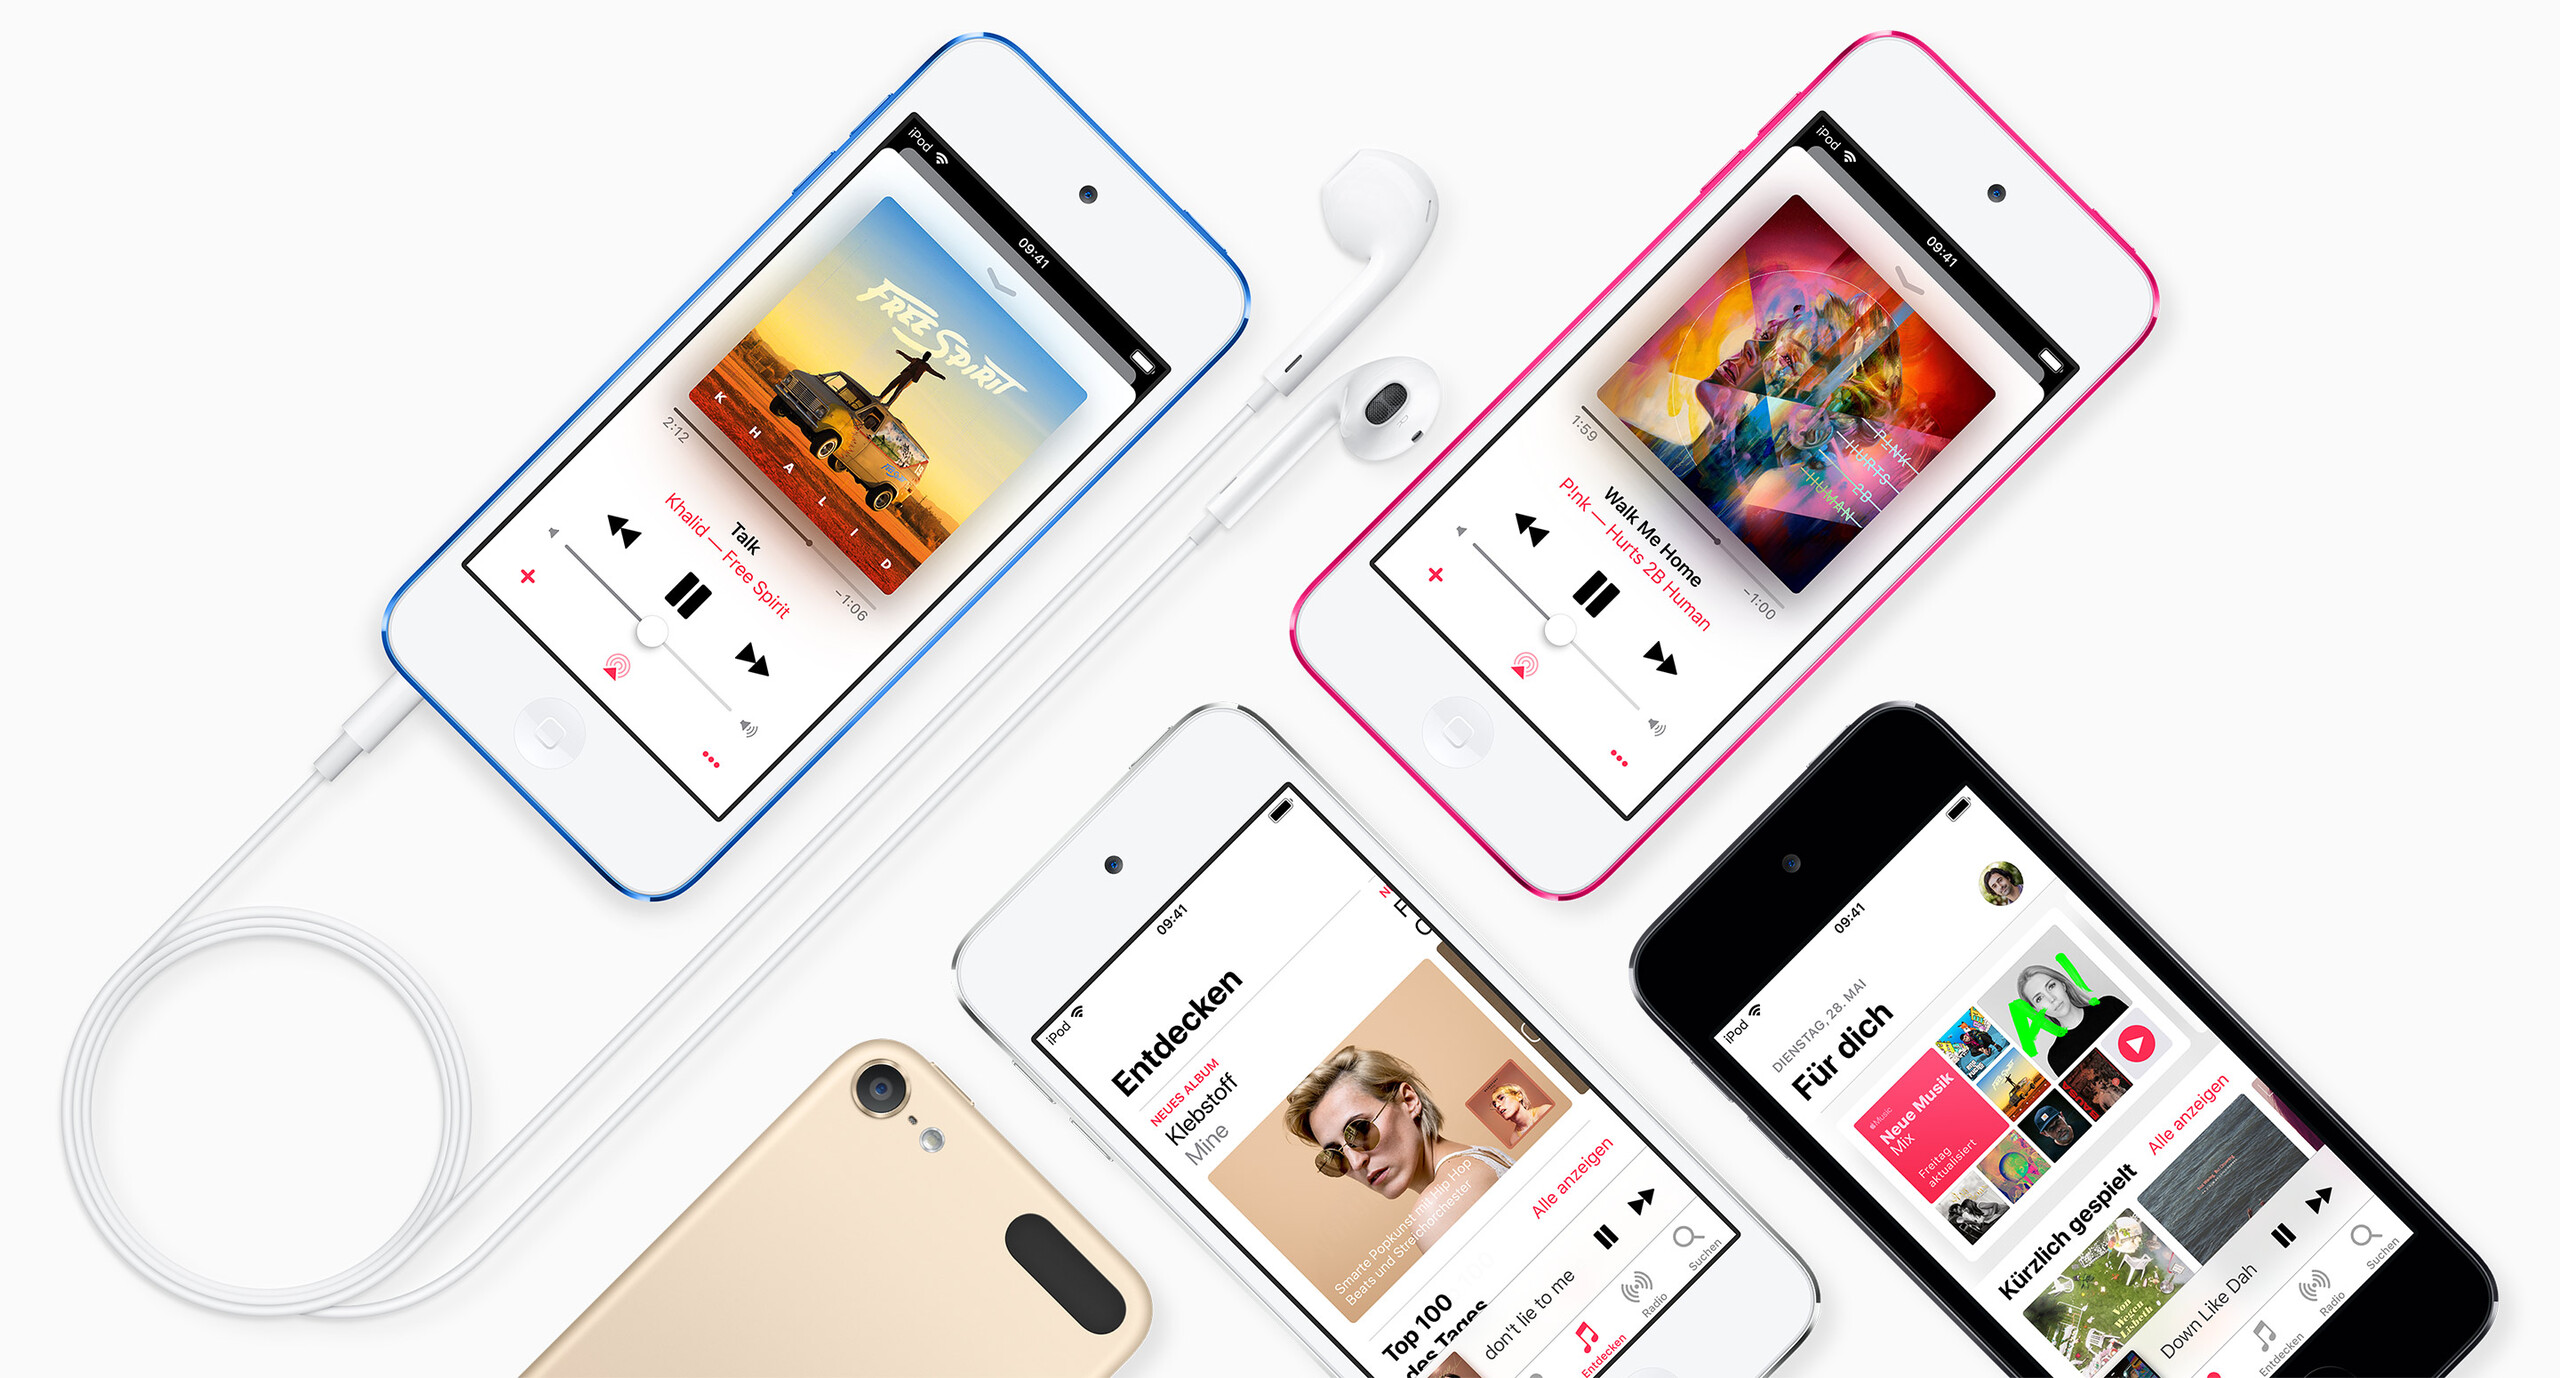 Apple wstrzymuje produkcję odtwarzaczy iPod: pozostałe zapasy wyprzedane w ciągu jednego dnia